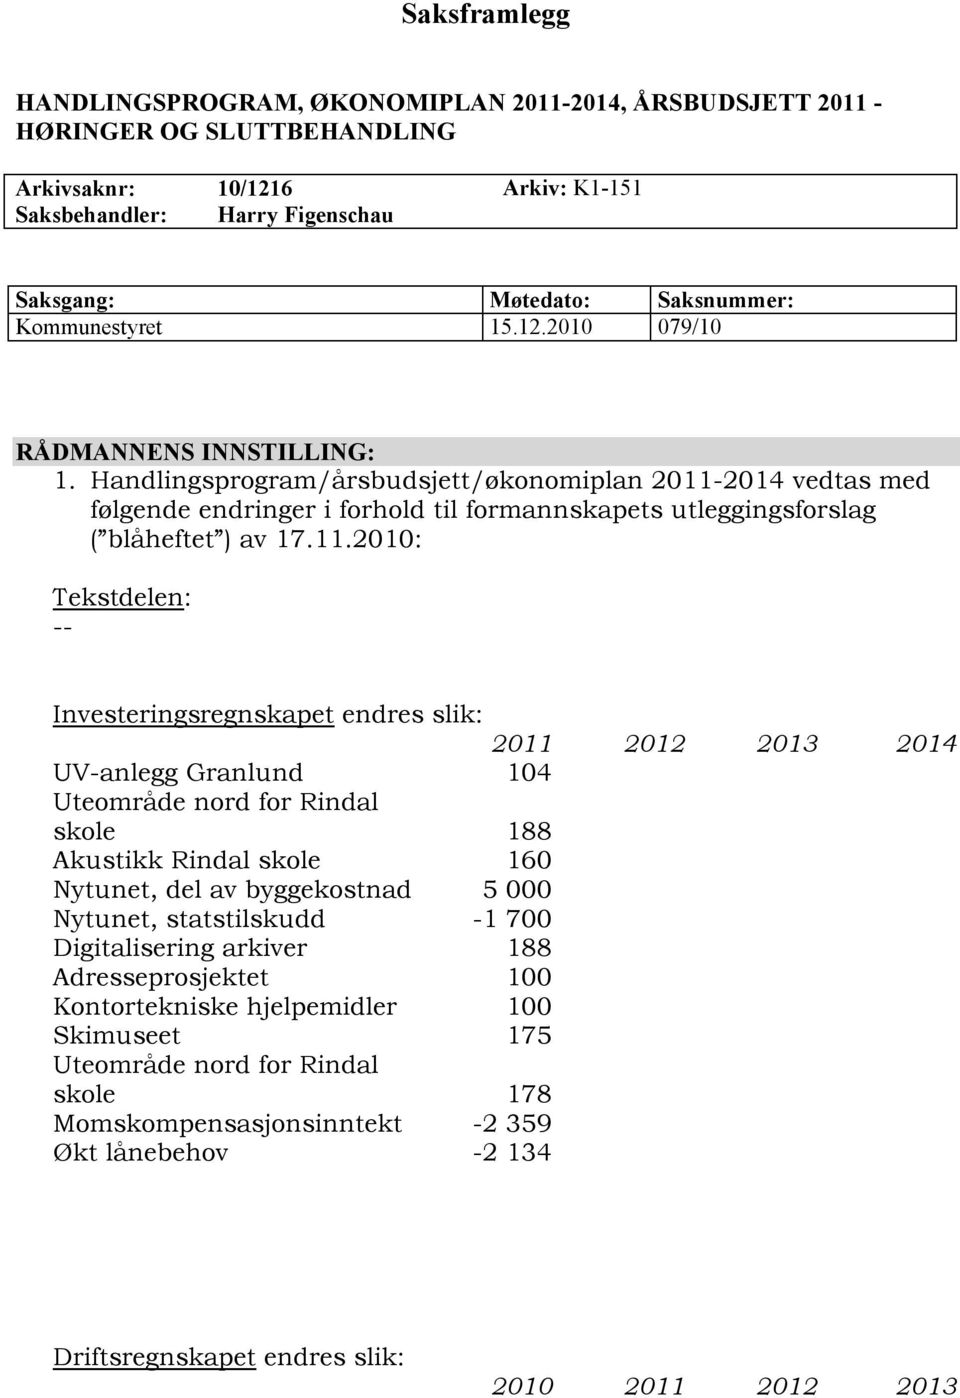 Handlingsprogram/årsbudsjett/økonomiplan 2011-